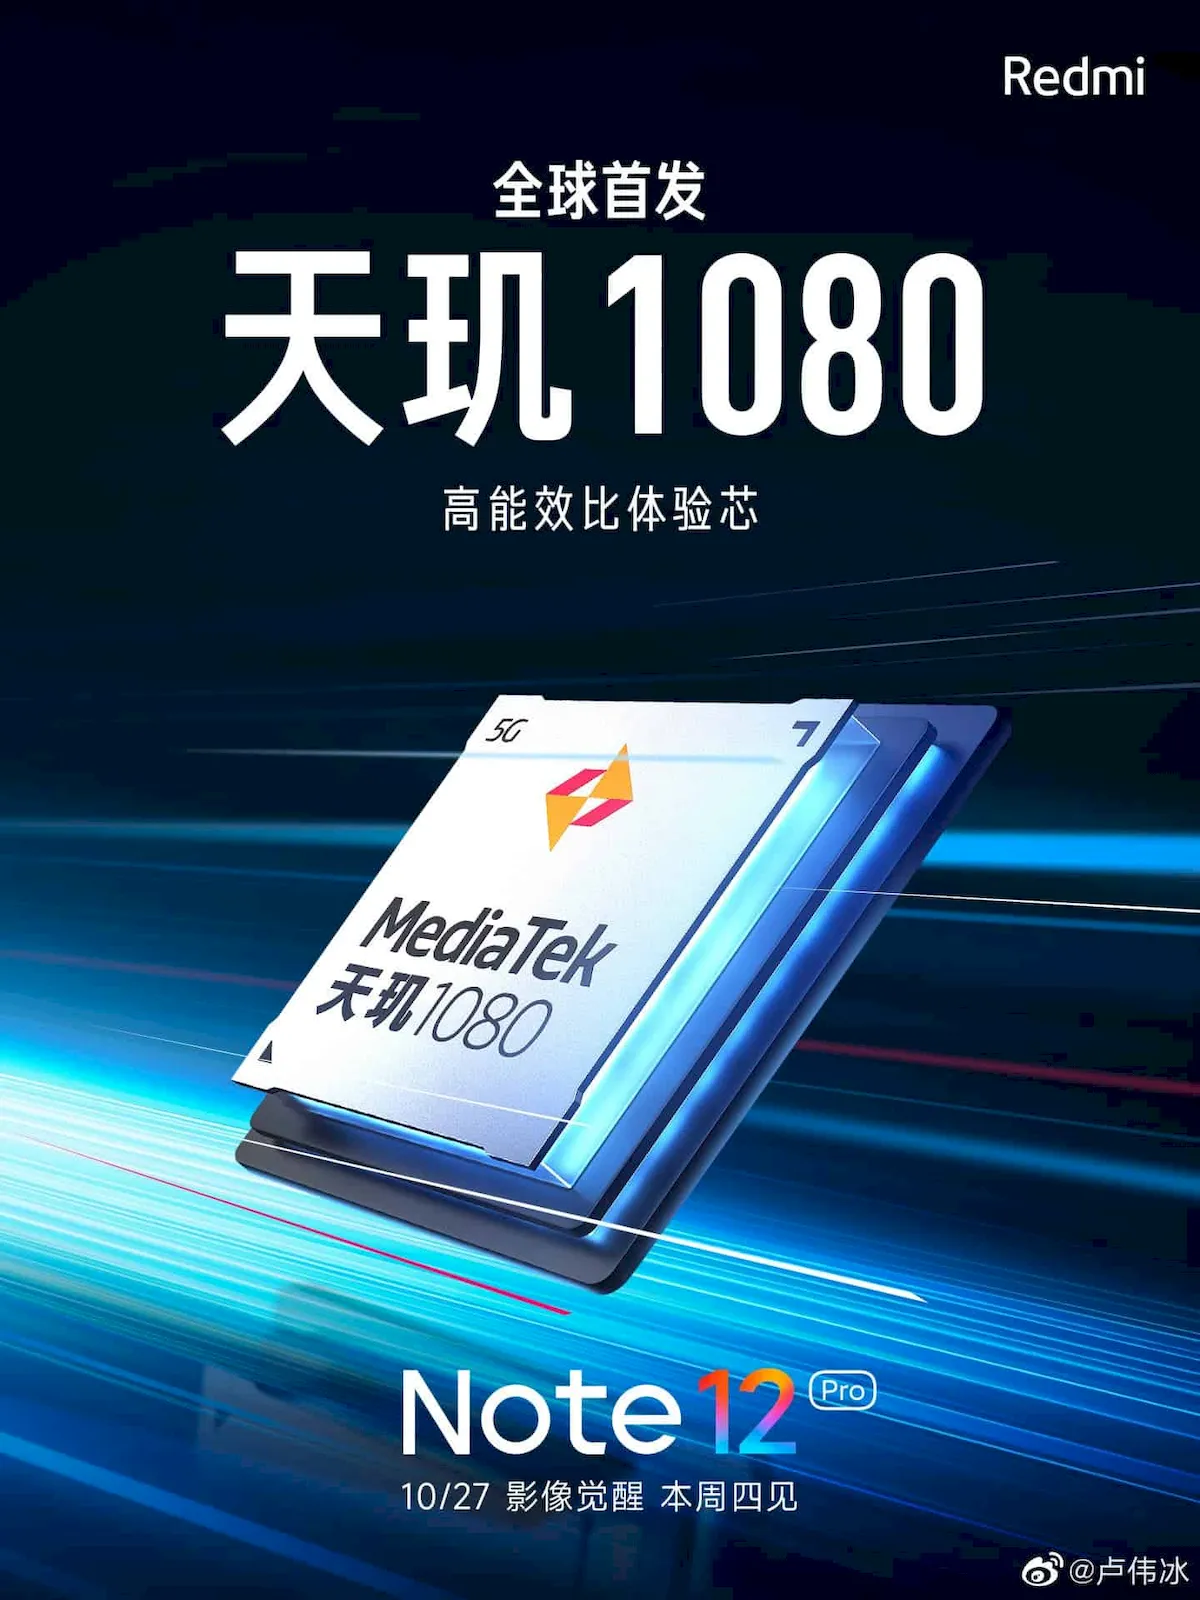 Xiaomi compartilhou muitas informações sobre o Redmi Note 12